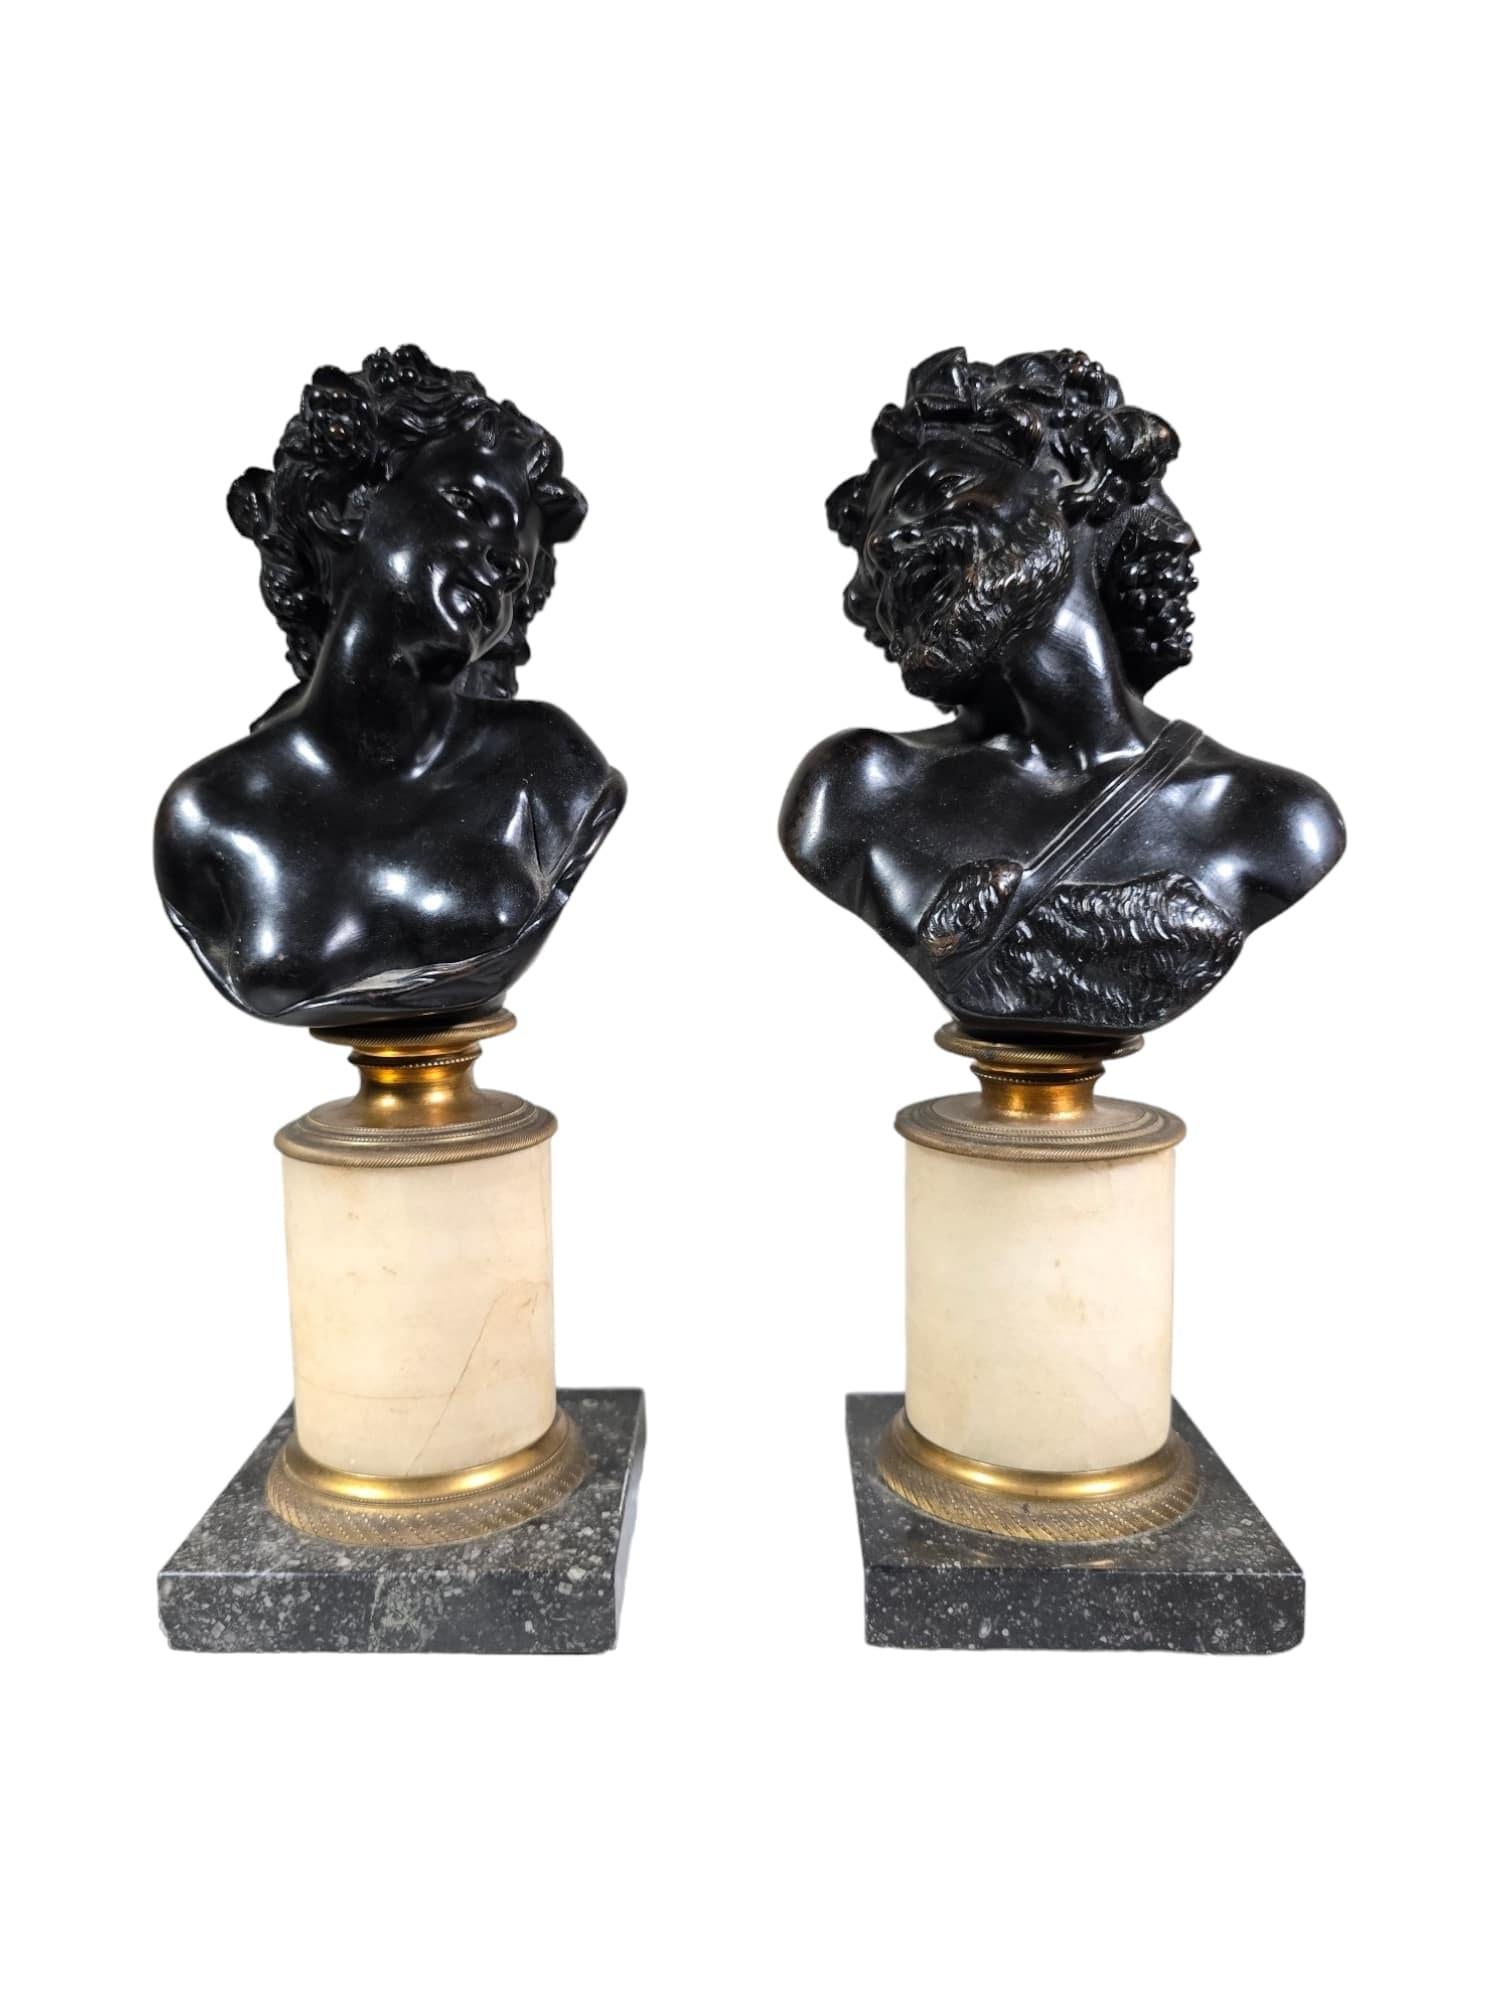 Dieses exquisite Paar antiker italienischer Bronzebüsten repräsentiert die zeitlose Anziehungskraft der Grand-Tour-Ära mit Darstellungen von Dionysos und Ariadne, die von dem berühmten Bildhauer Clodion inspiriert sind. Die Büsten stammen aus dem